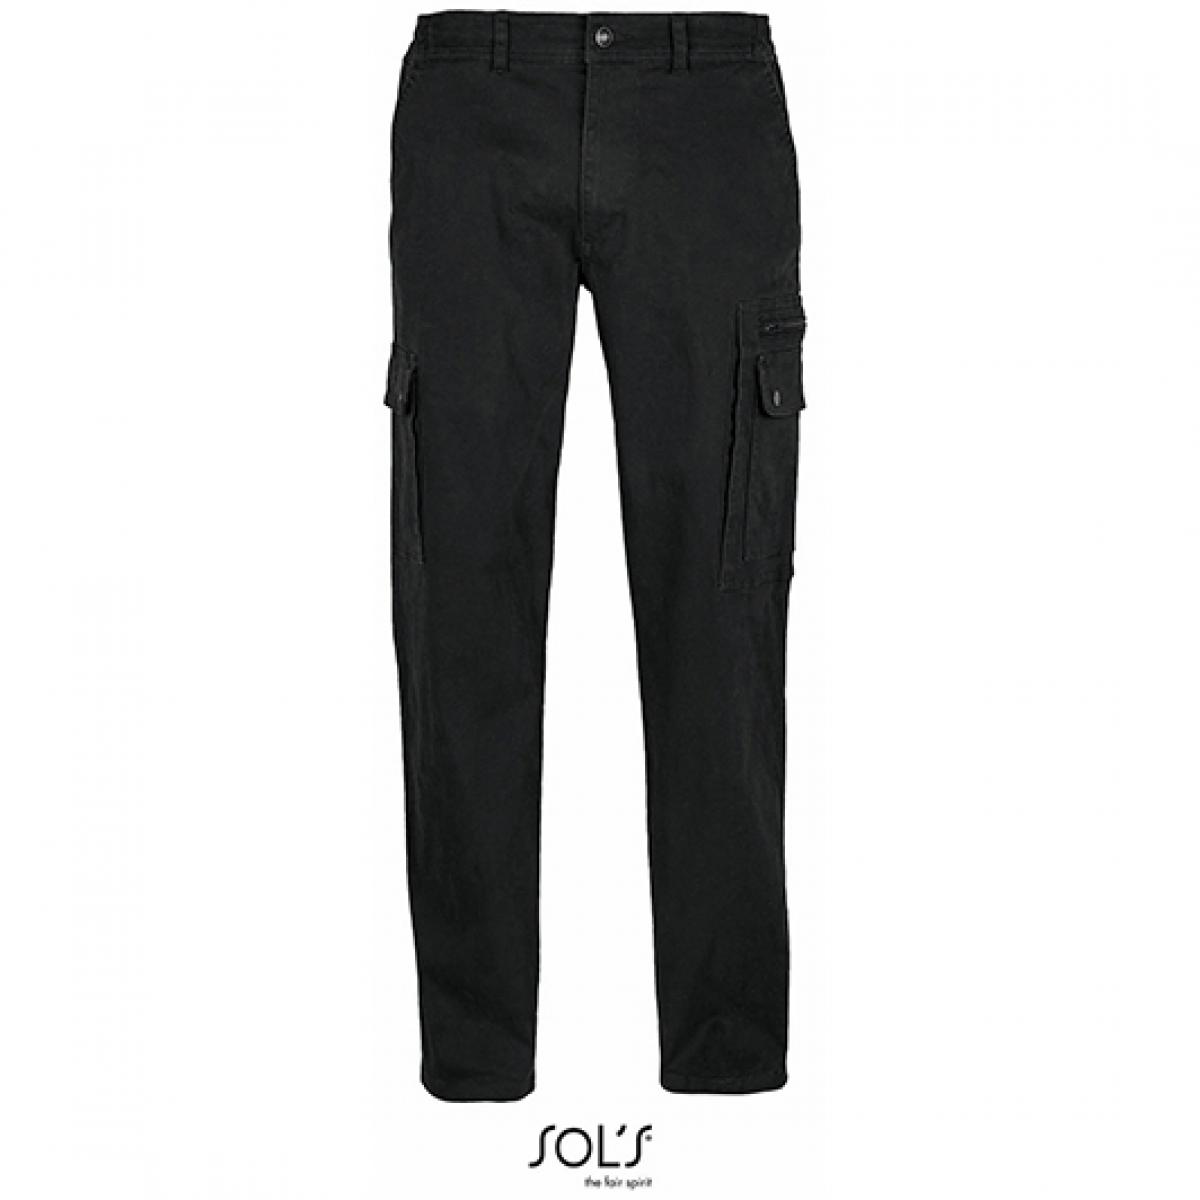 Hersteller: SOLs Herstellernummer: 03820 Artikelbezeichnung: Men´s Docker Pants - Herren Arbeitshose Farbe: Black